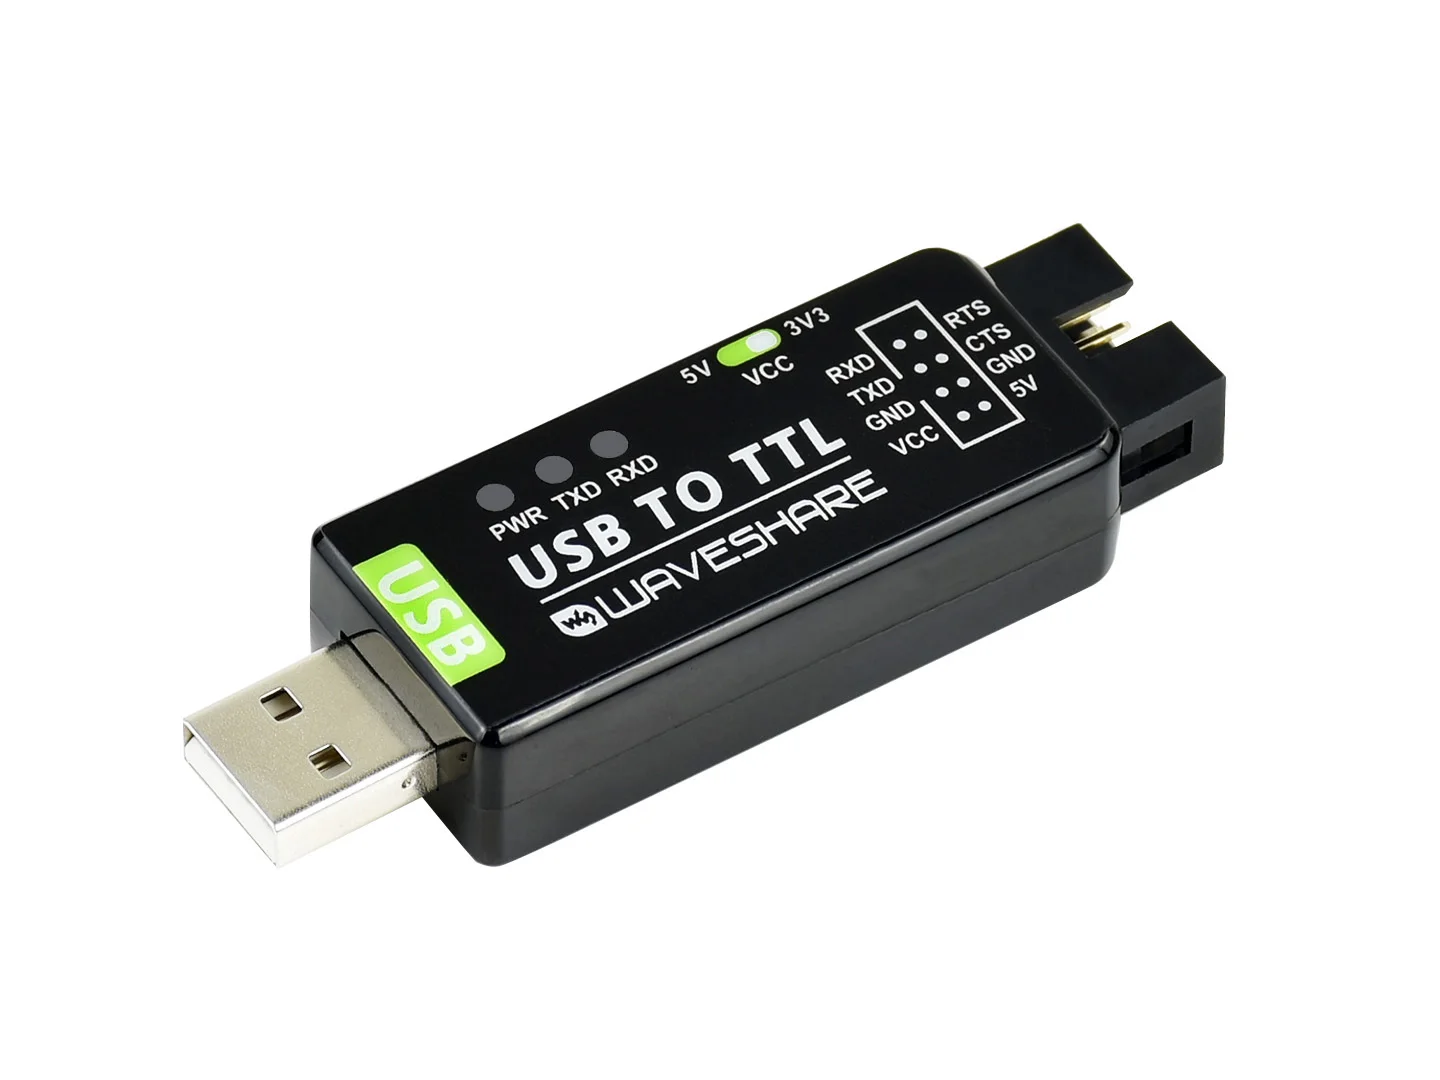 

Преобразователь USB в TTL, промышленный преобразователь USB в TTL, оригинальный встроенный FT232RNL, многоцепочная защита, поддержка нескольких систем